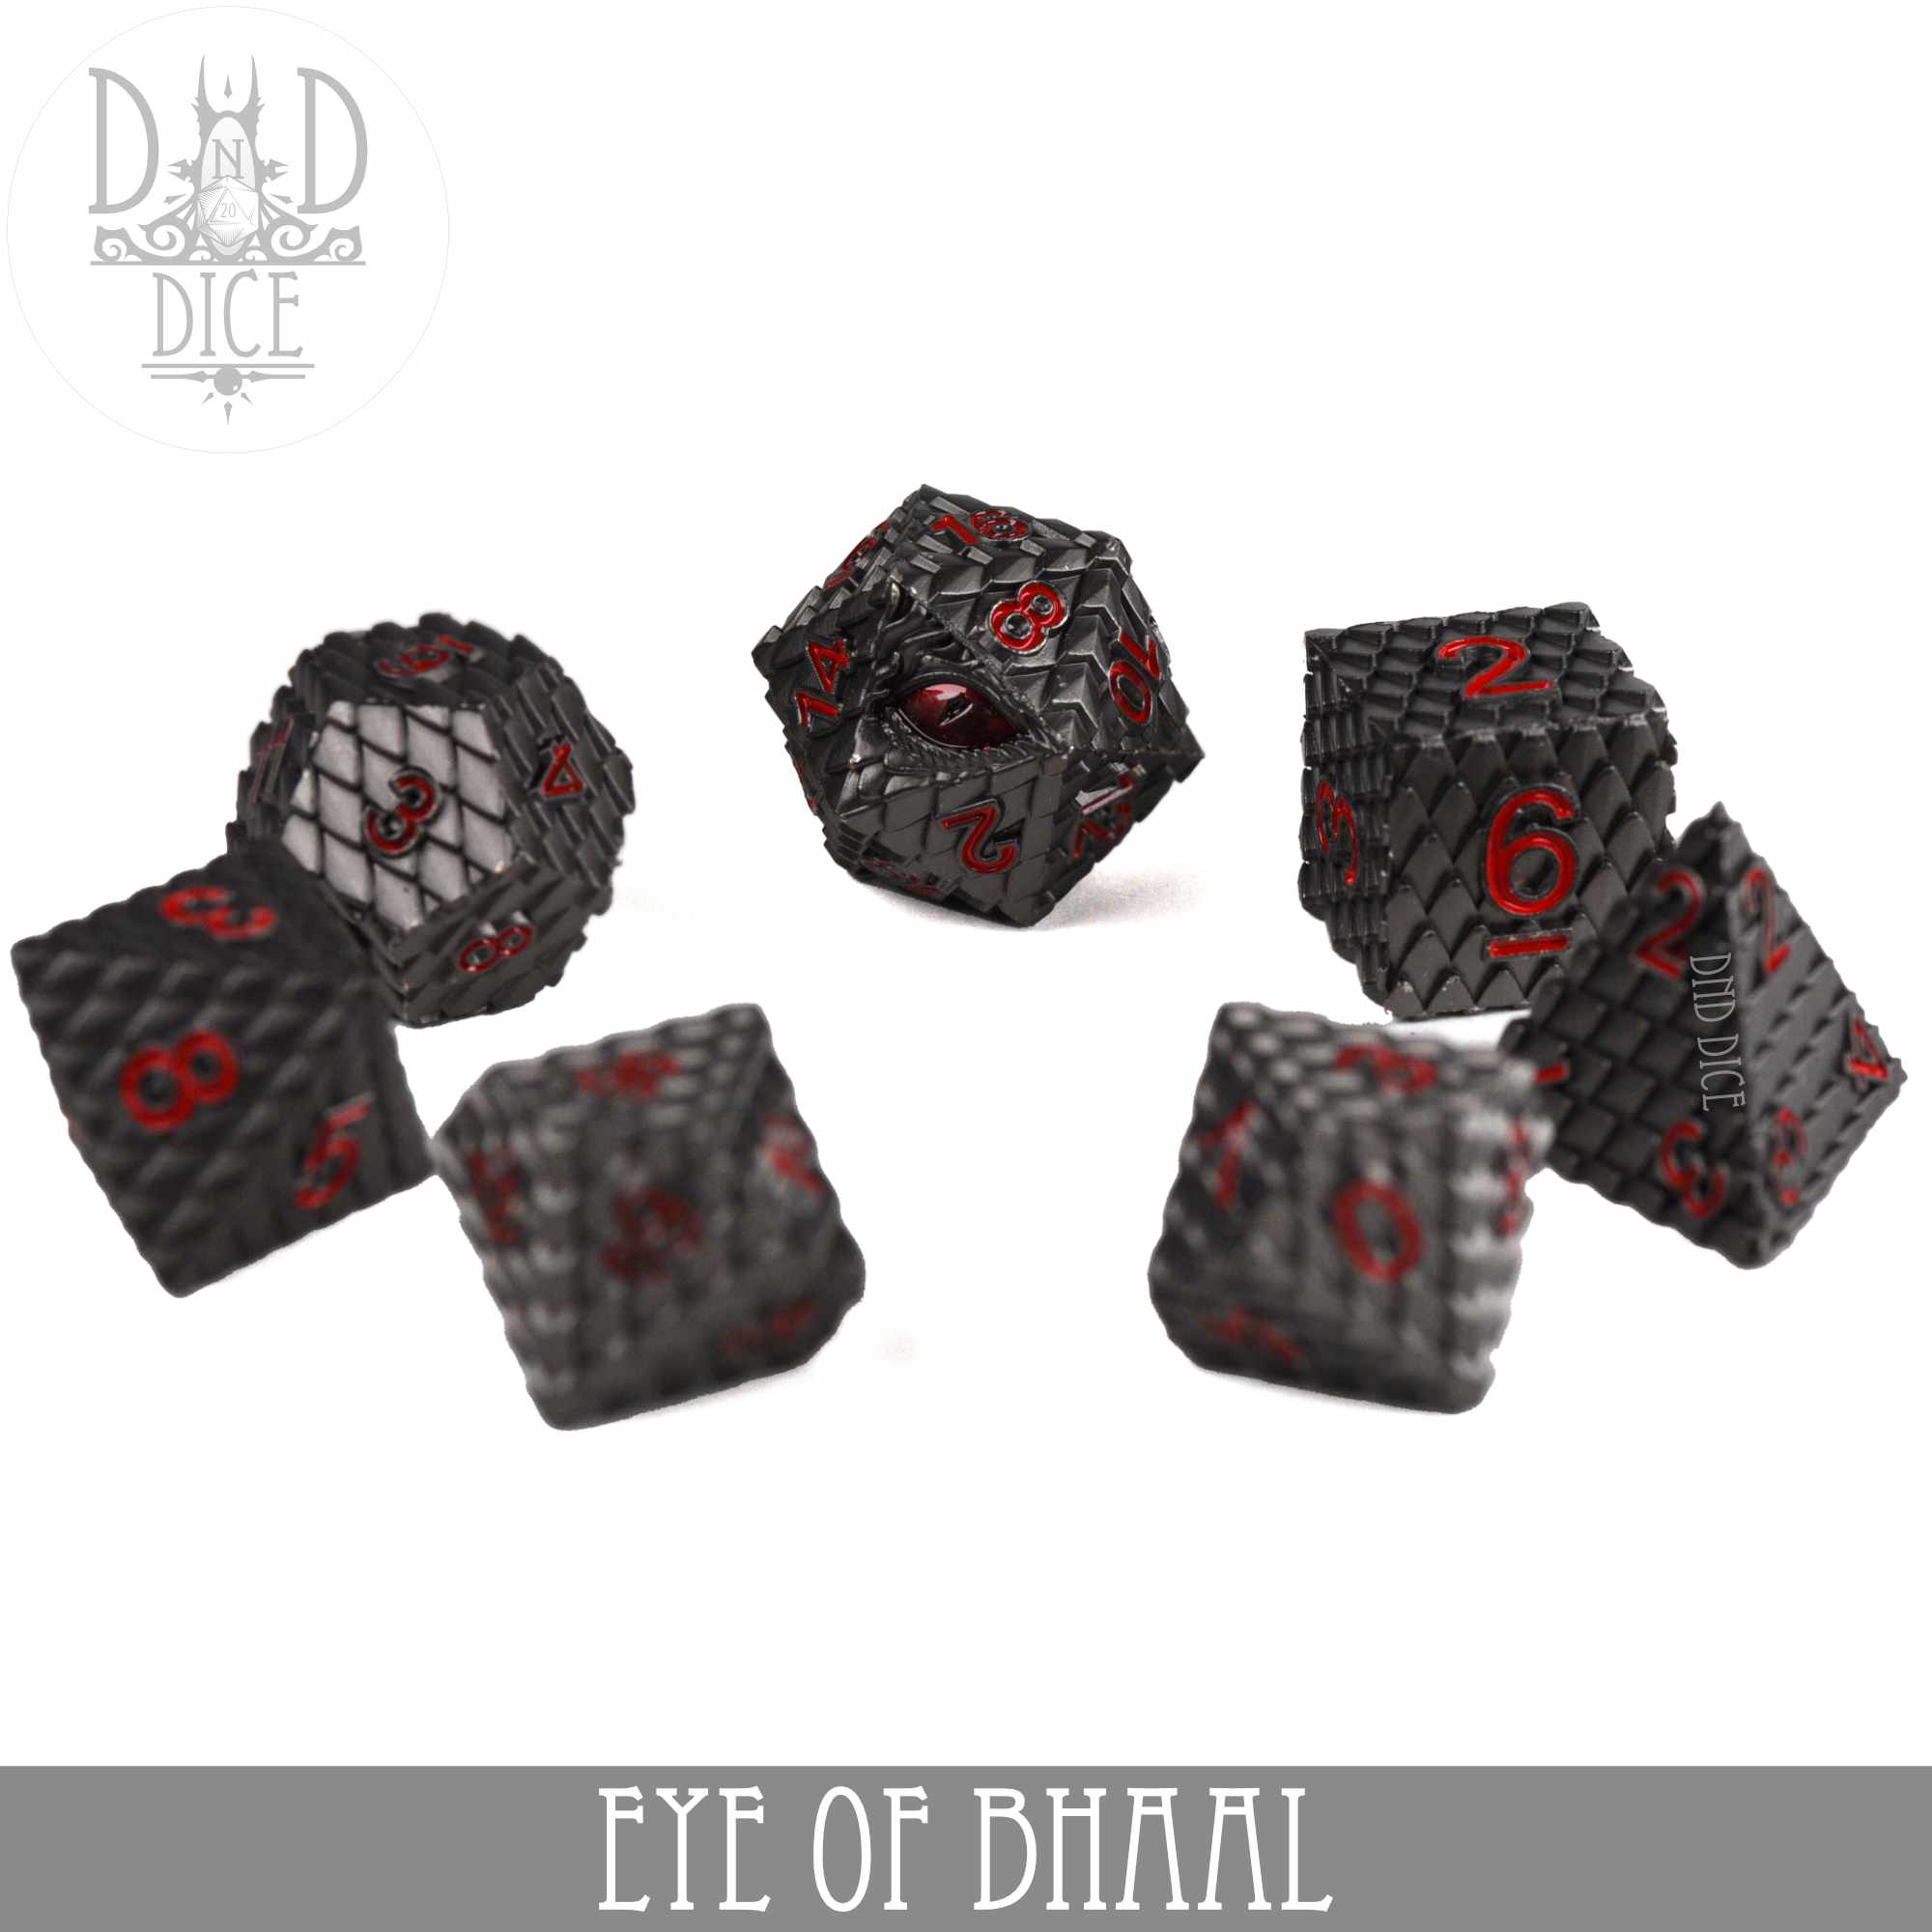 Eye of Bhaal Metal Dice Set